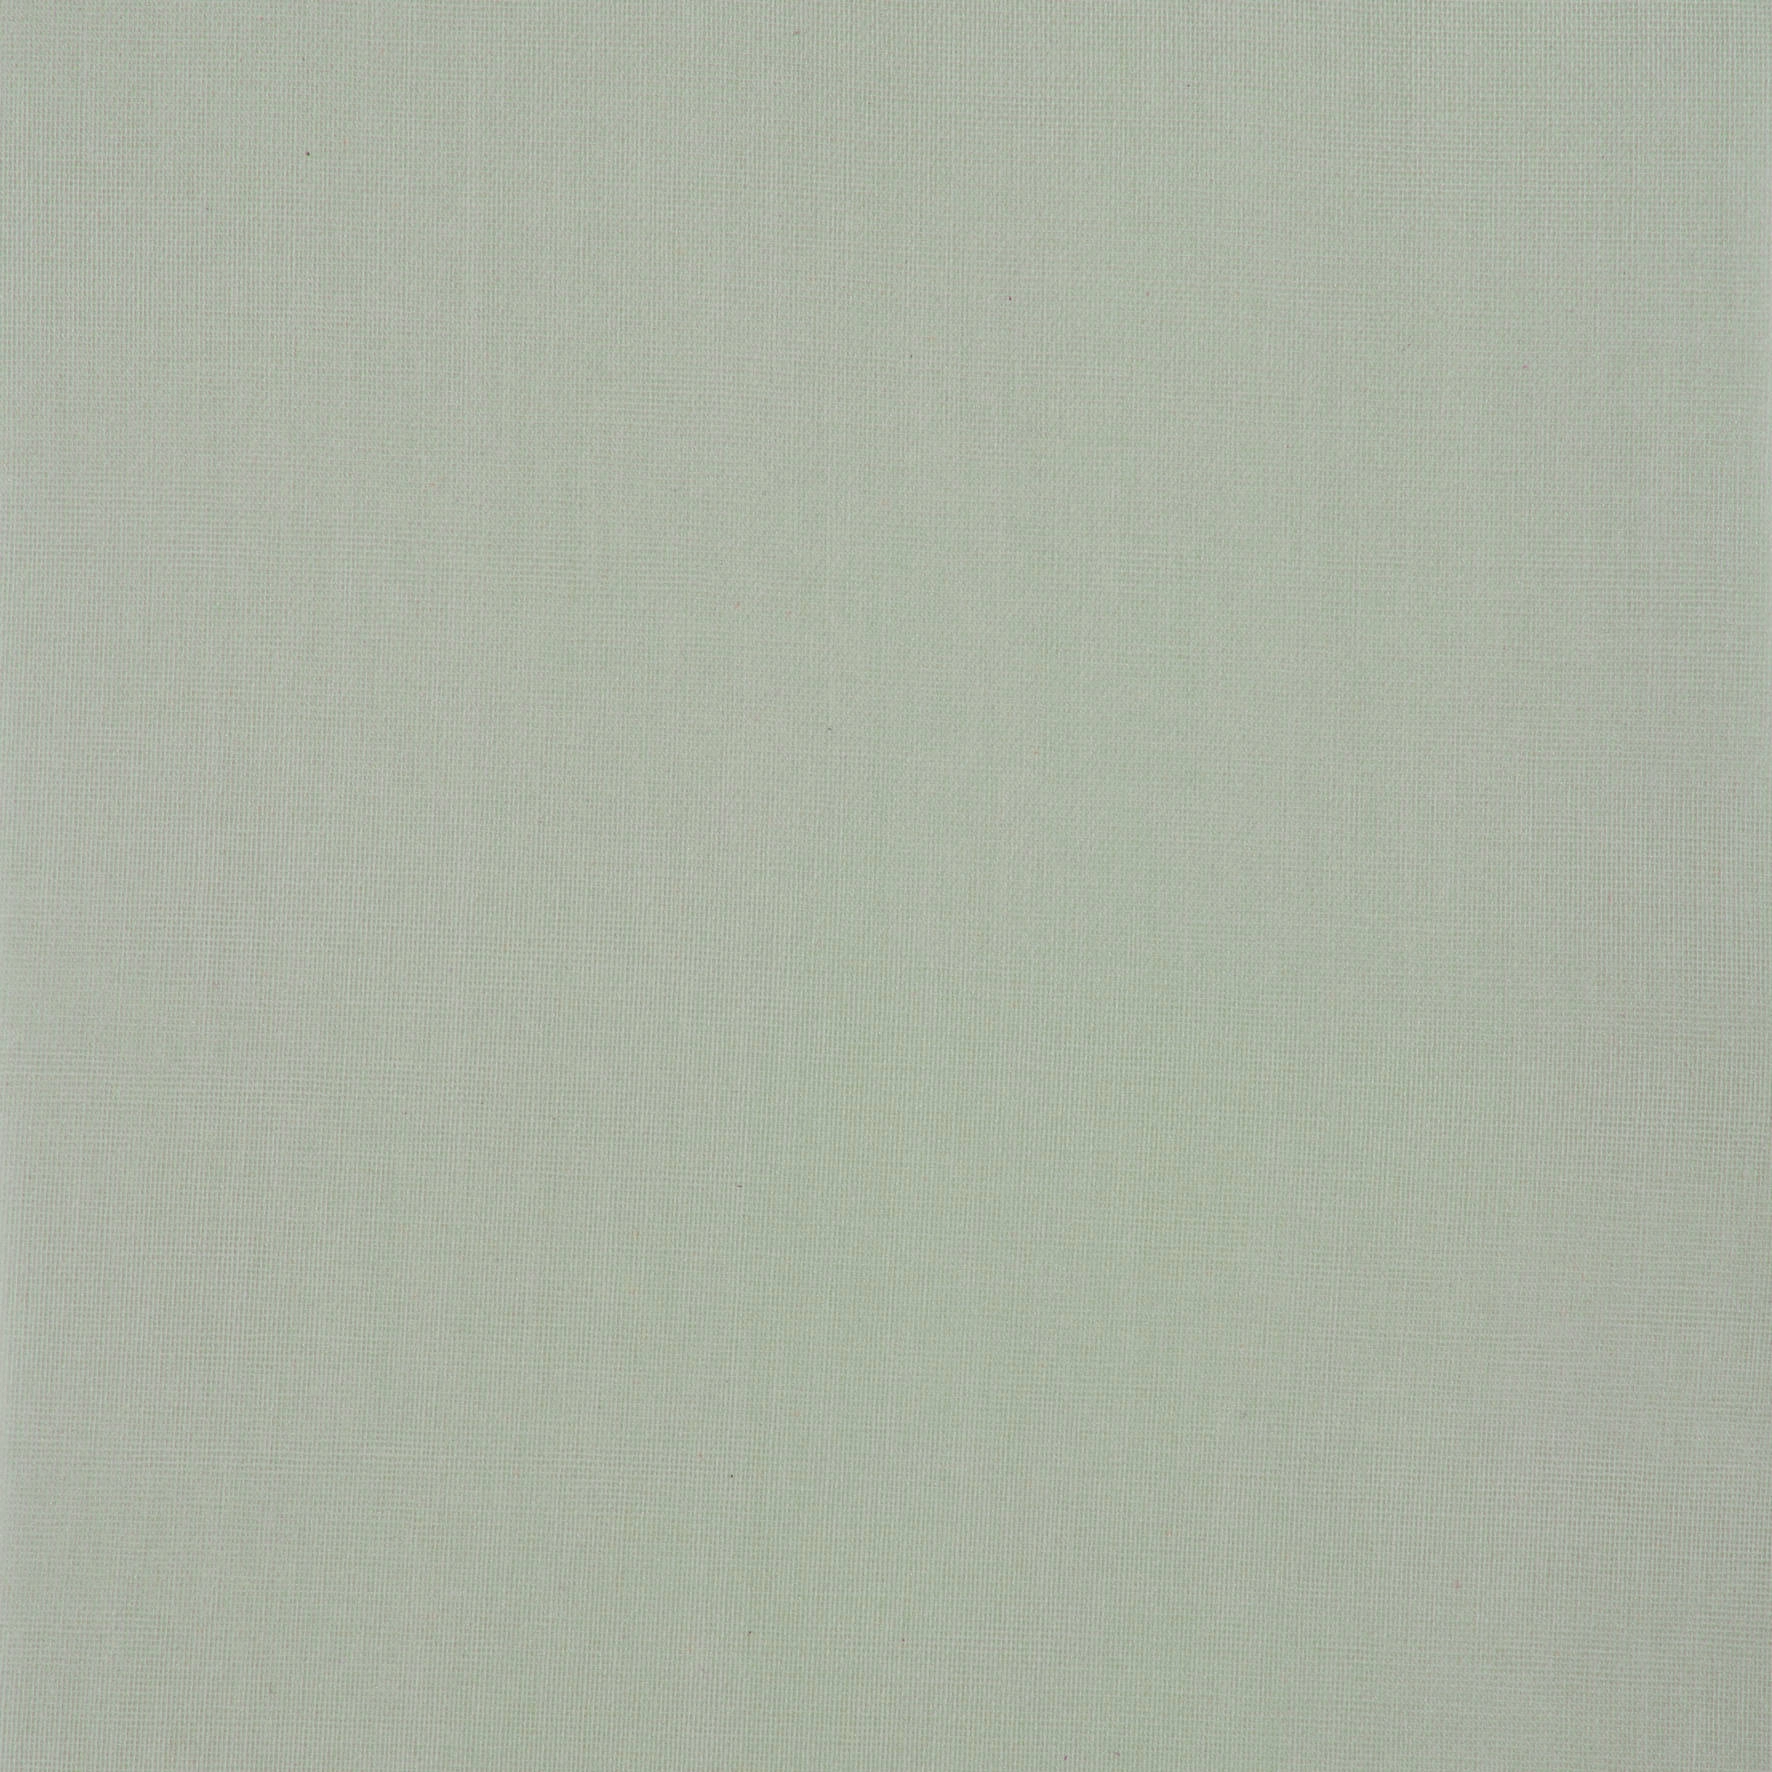 Schöner Wohnen Tageslicht-Rollo Tizia 45 cm x 150 cm Grün